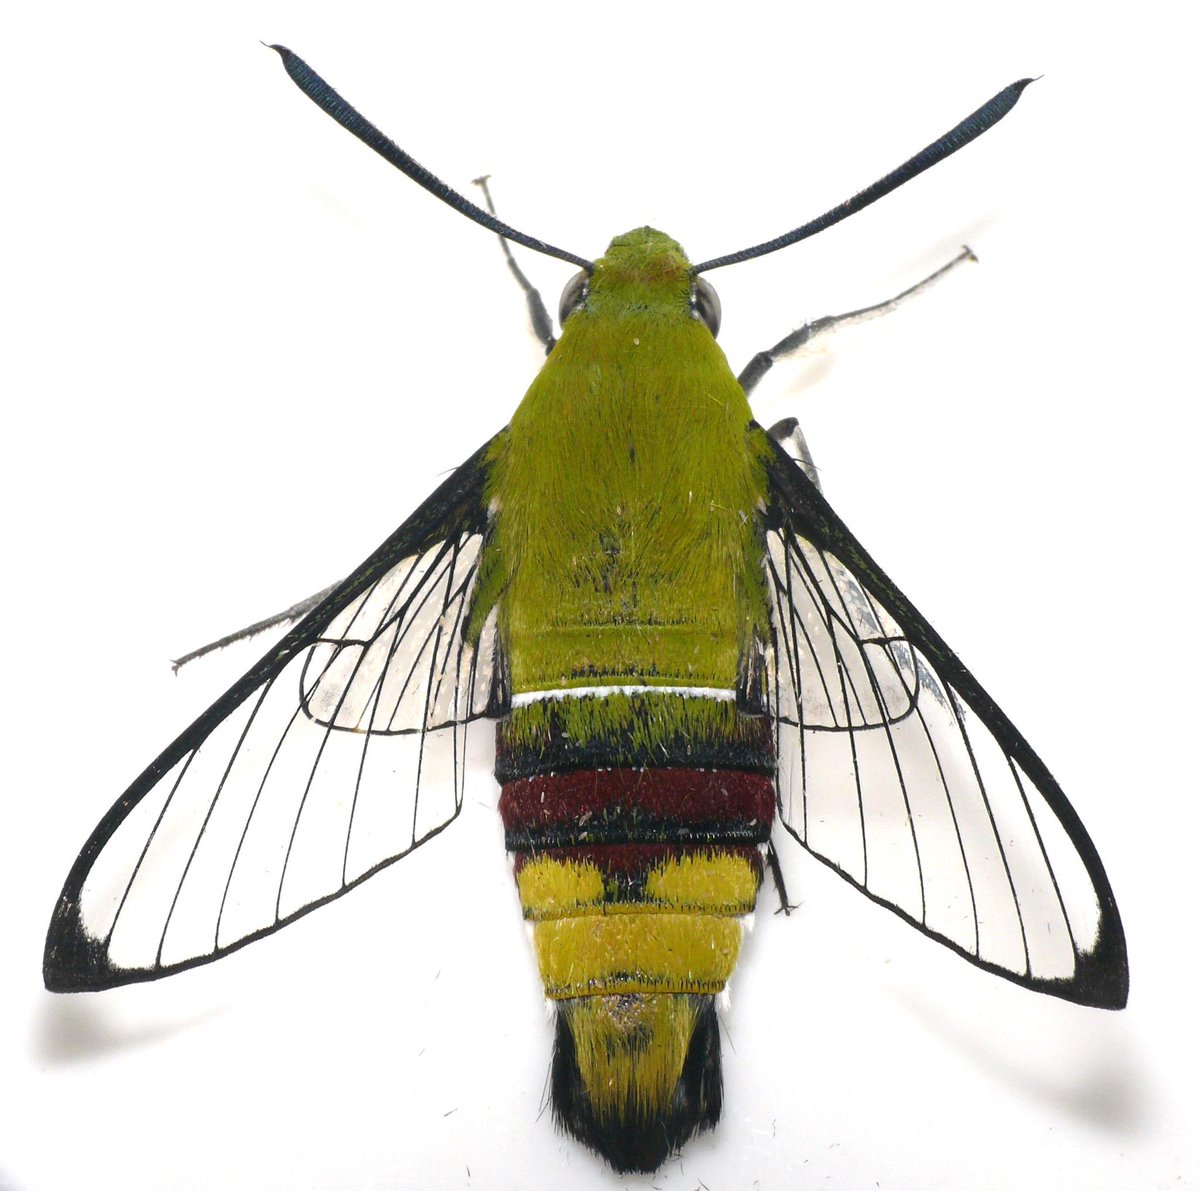 神大むし研 オオスカシバの新成虫 翅が透明なので スカシバ という名前がついていますが 羽化したては一応鱗粉があるスズメガです 左 翅を小刻みにうるわせて鱗粉を落とします 右 Http T Co Nwz2lttgef